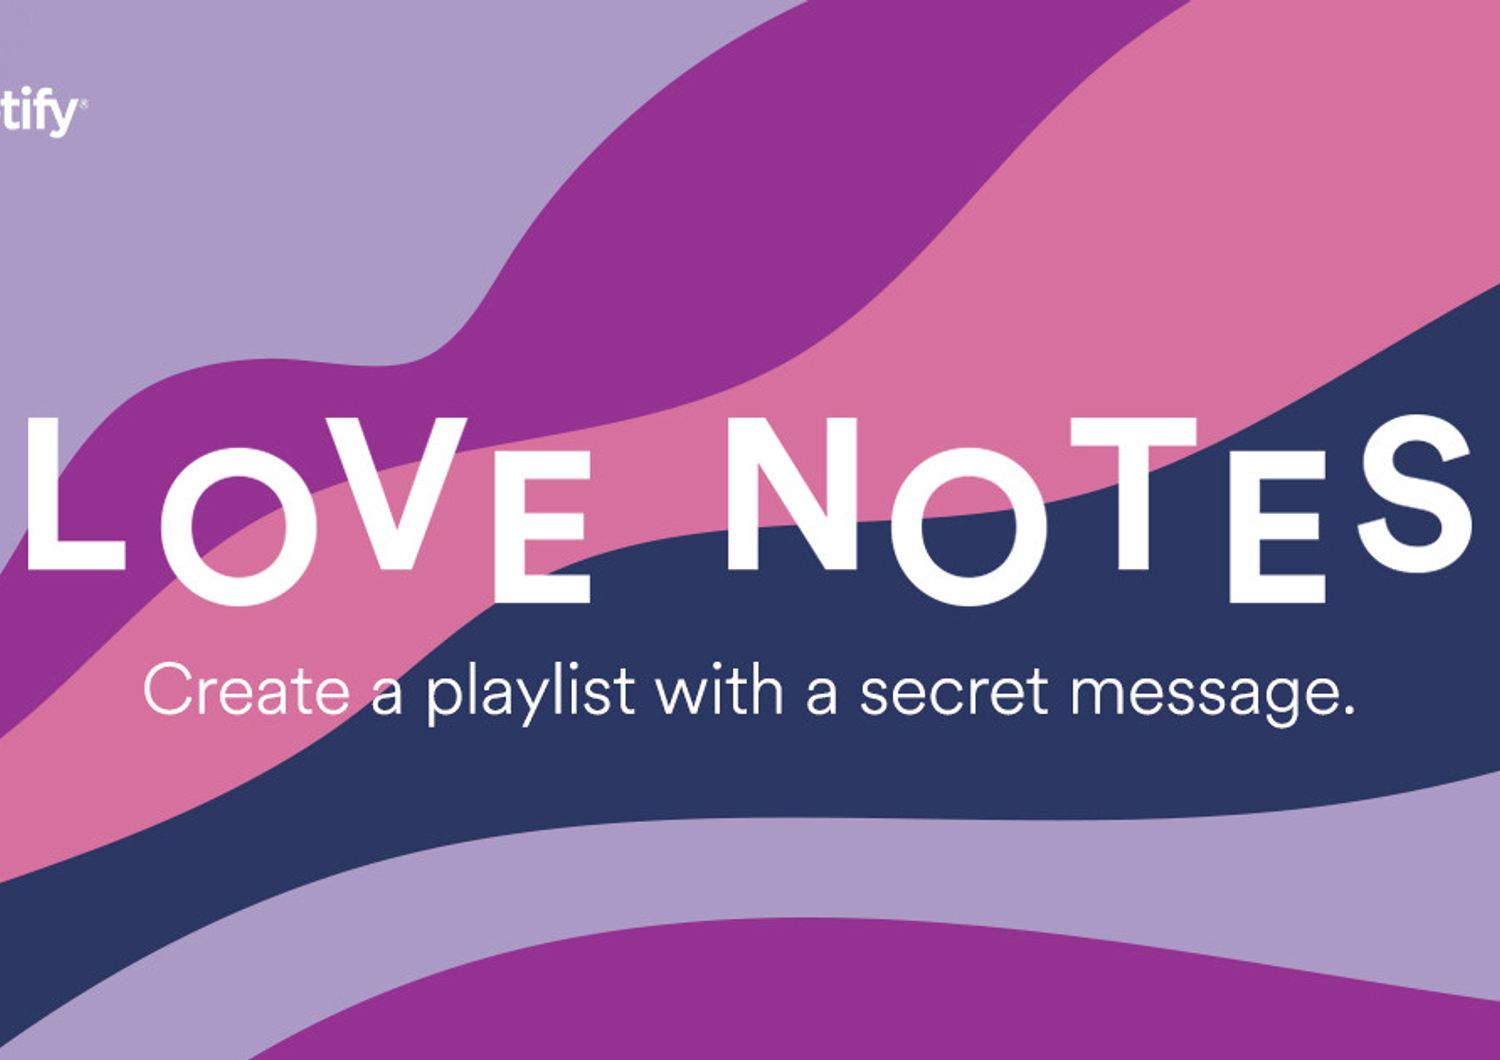 In occasione di San Valentino, Spotify lancia Love Notes, uno strumento che ti permette di creare la playlist perfetta per la persona che ami, con un messaggio nascosto &nbsp;